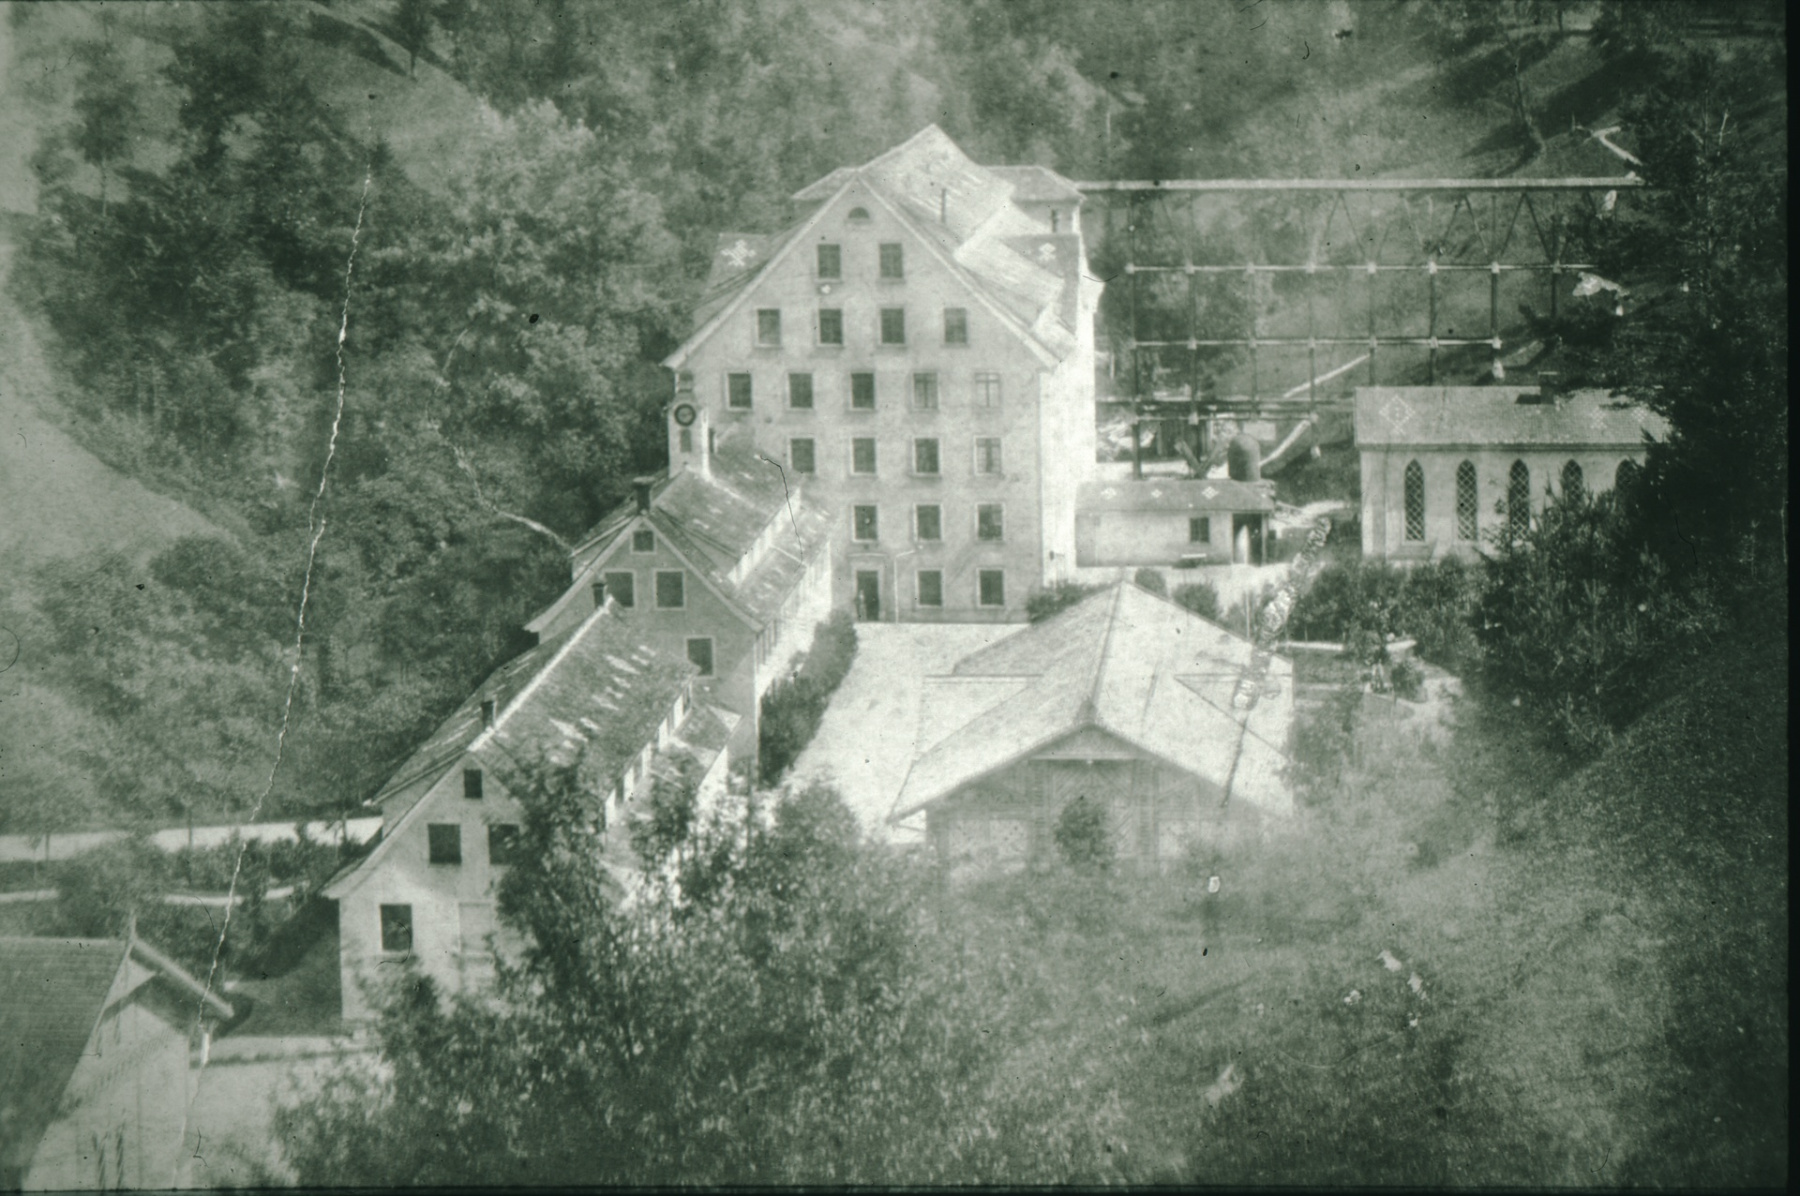 Fabrikanlage mit Kanal zum Wasserrad - ältestes bekanntes Foto von Neuthal!